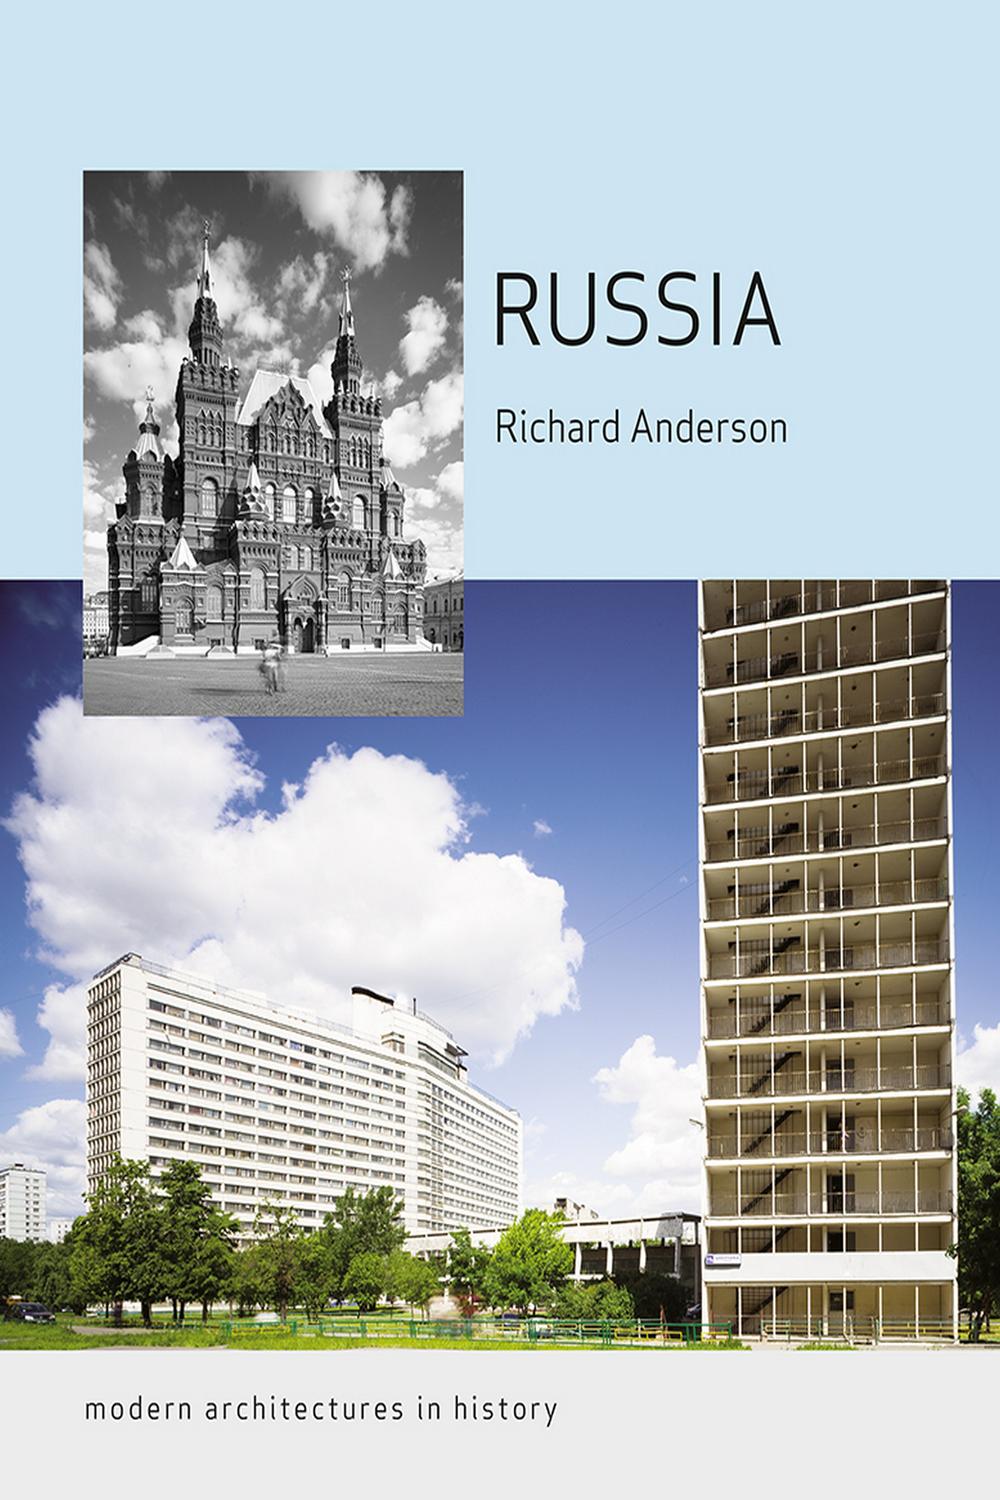 Russia - Richard Anderson